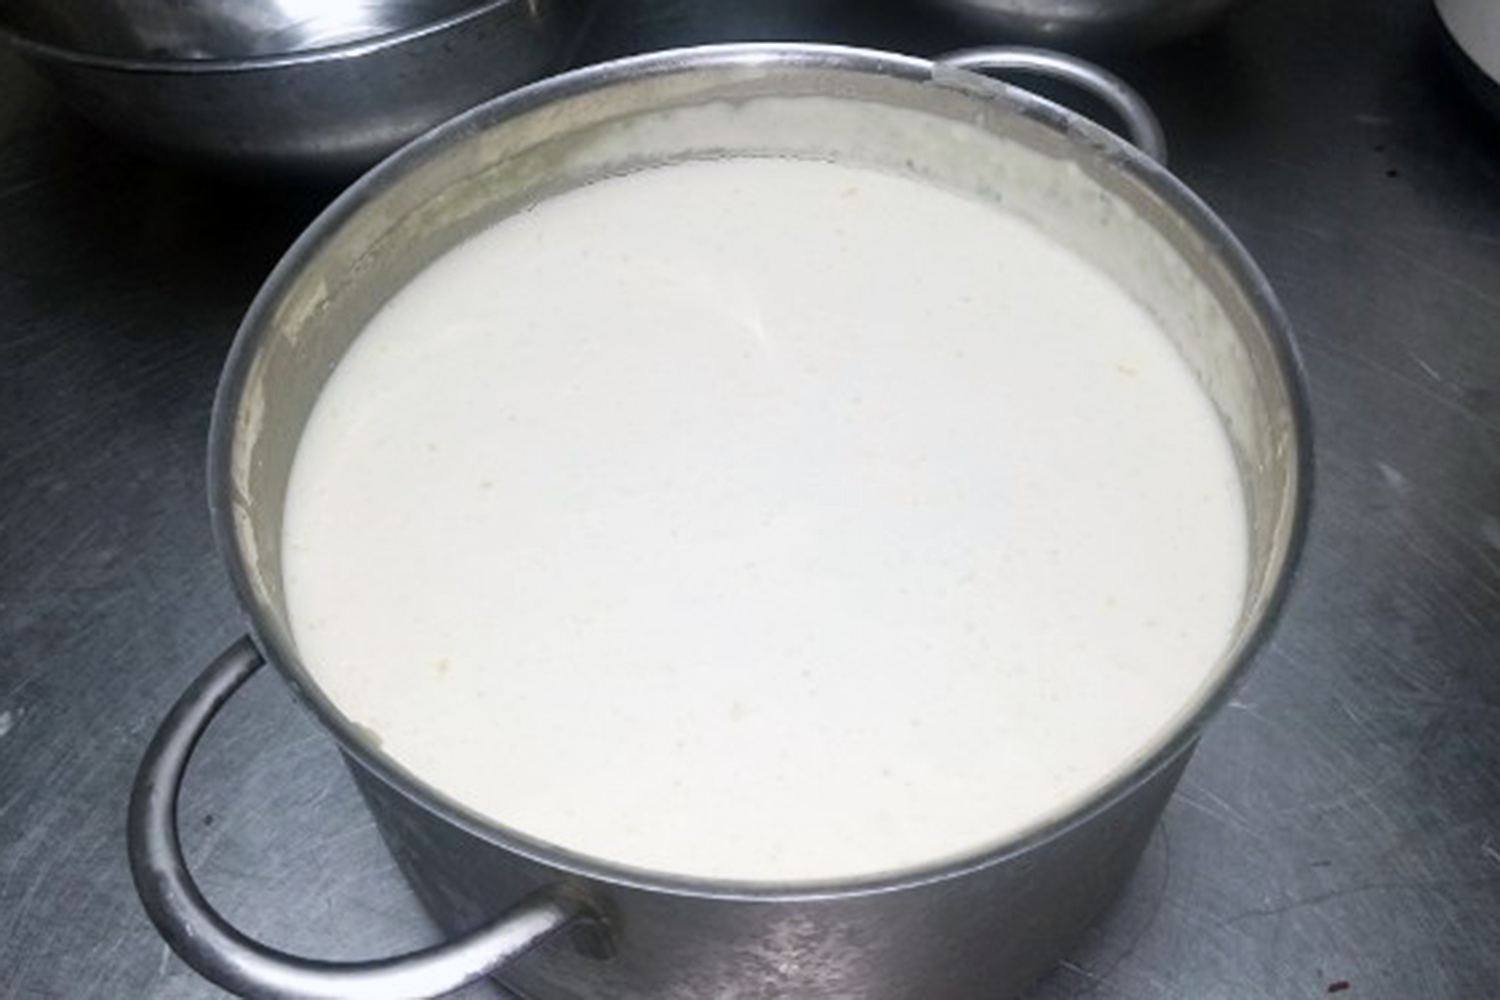 Produkt finalny, czyli osełki własnoręcznie zrobionego masła oraz poszczególne etapy jego wyrabiania, a także odcedzona maślanka / Fot. Marzena Smoręda